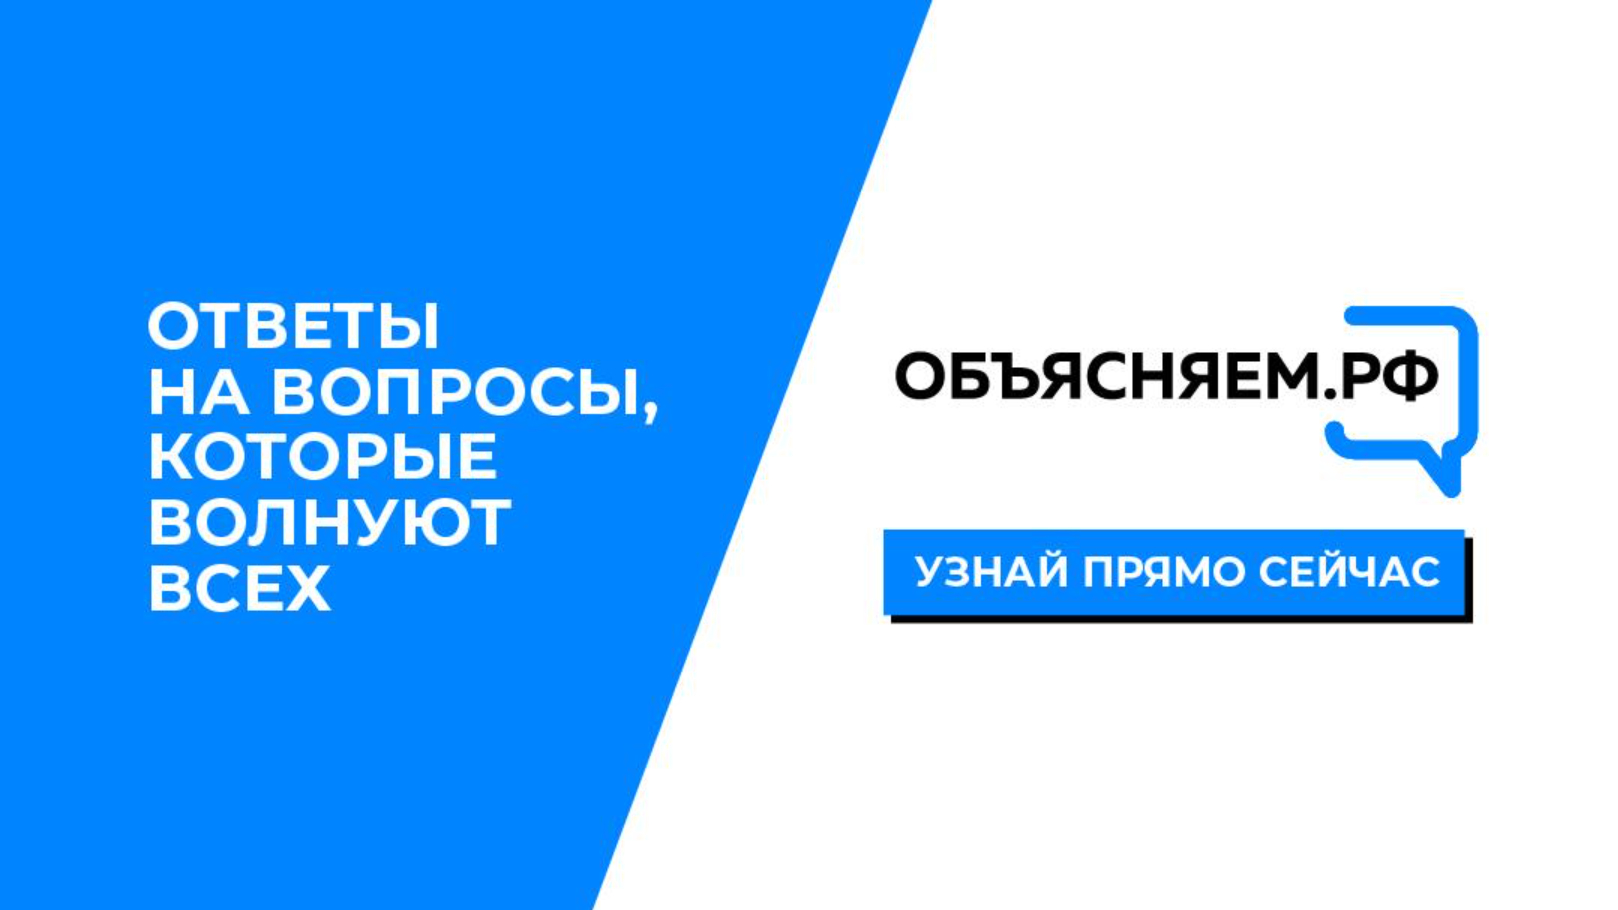 Официальный интернет-ресурс о социально-экономической ситуации в России